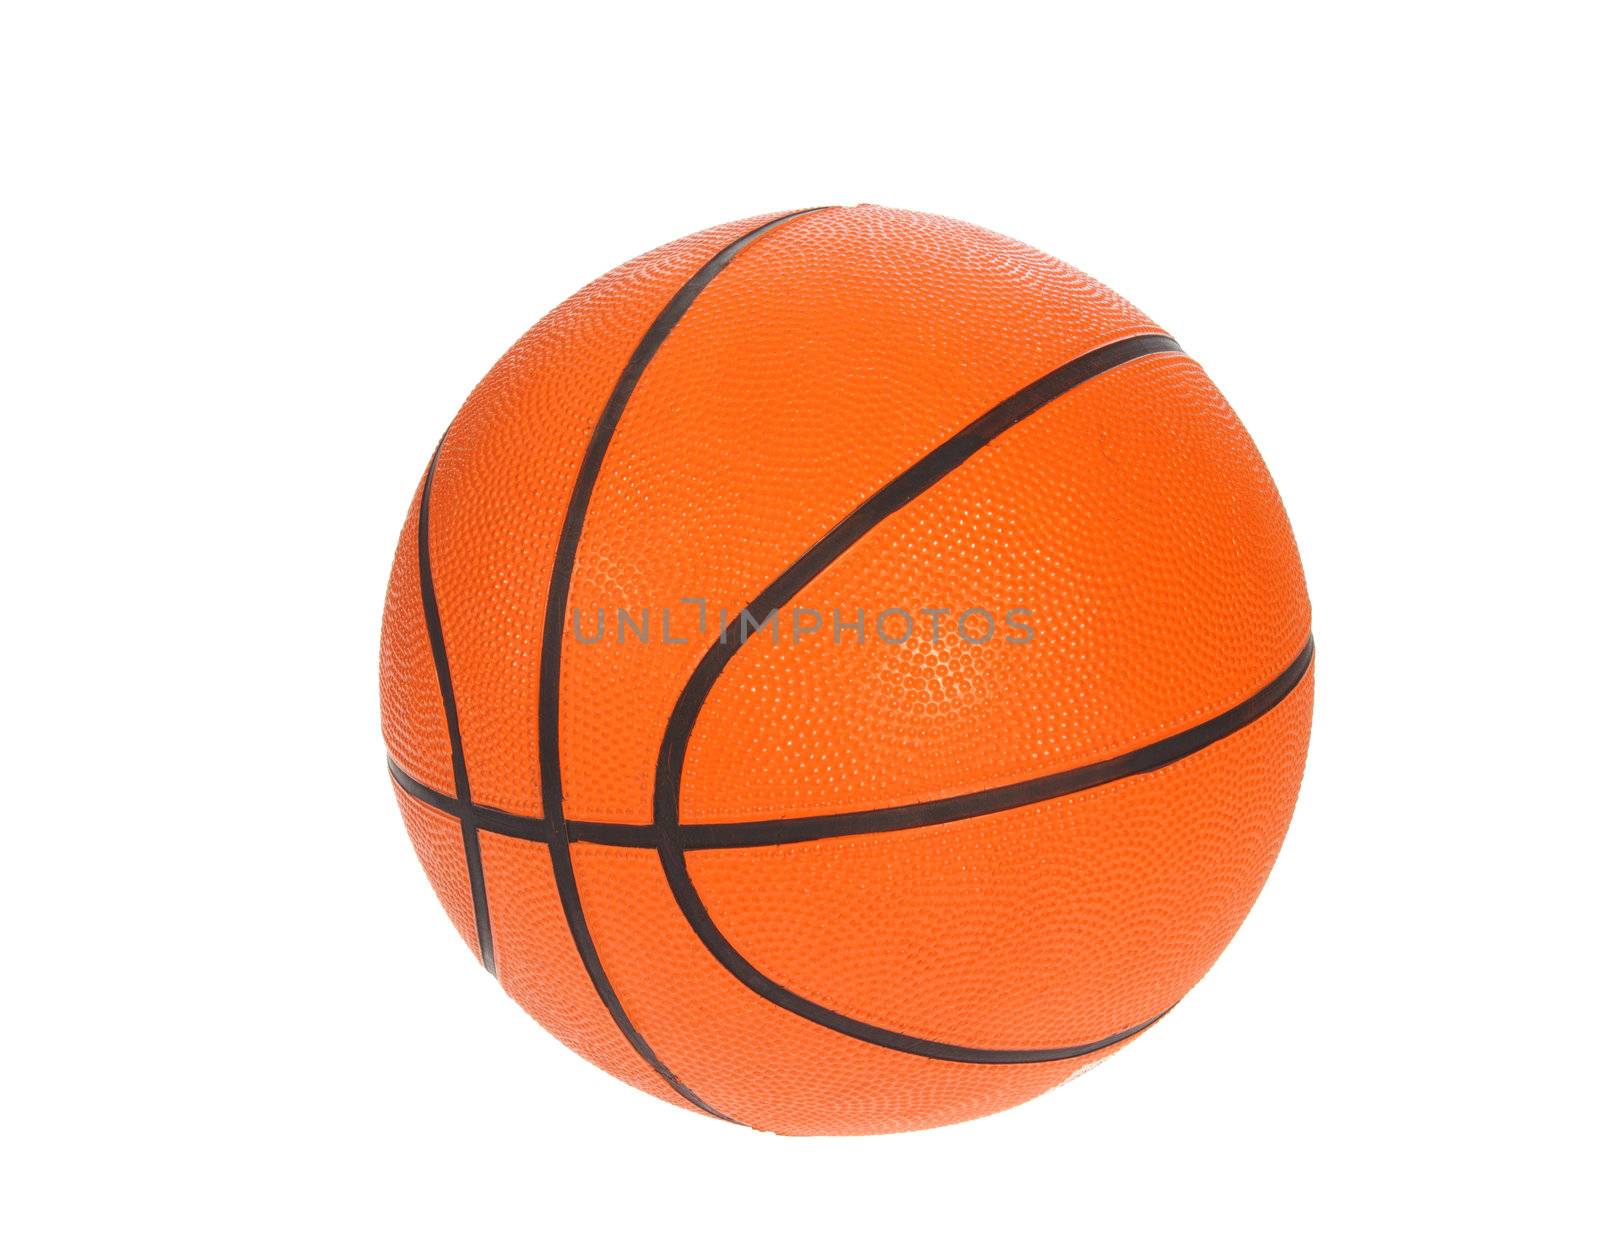 Orange basket ball by aguirre_mar